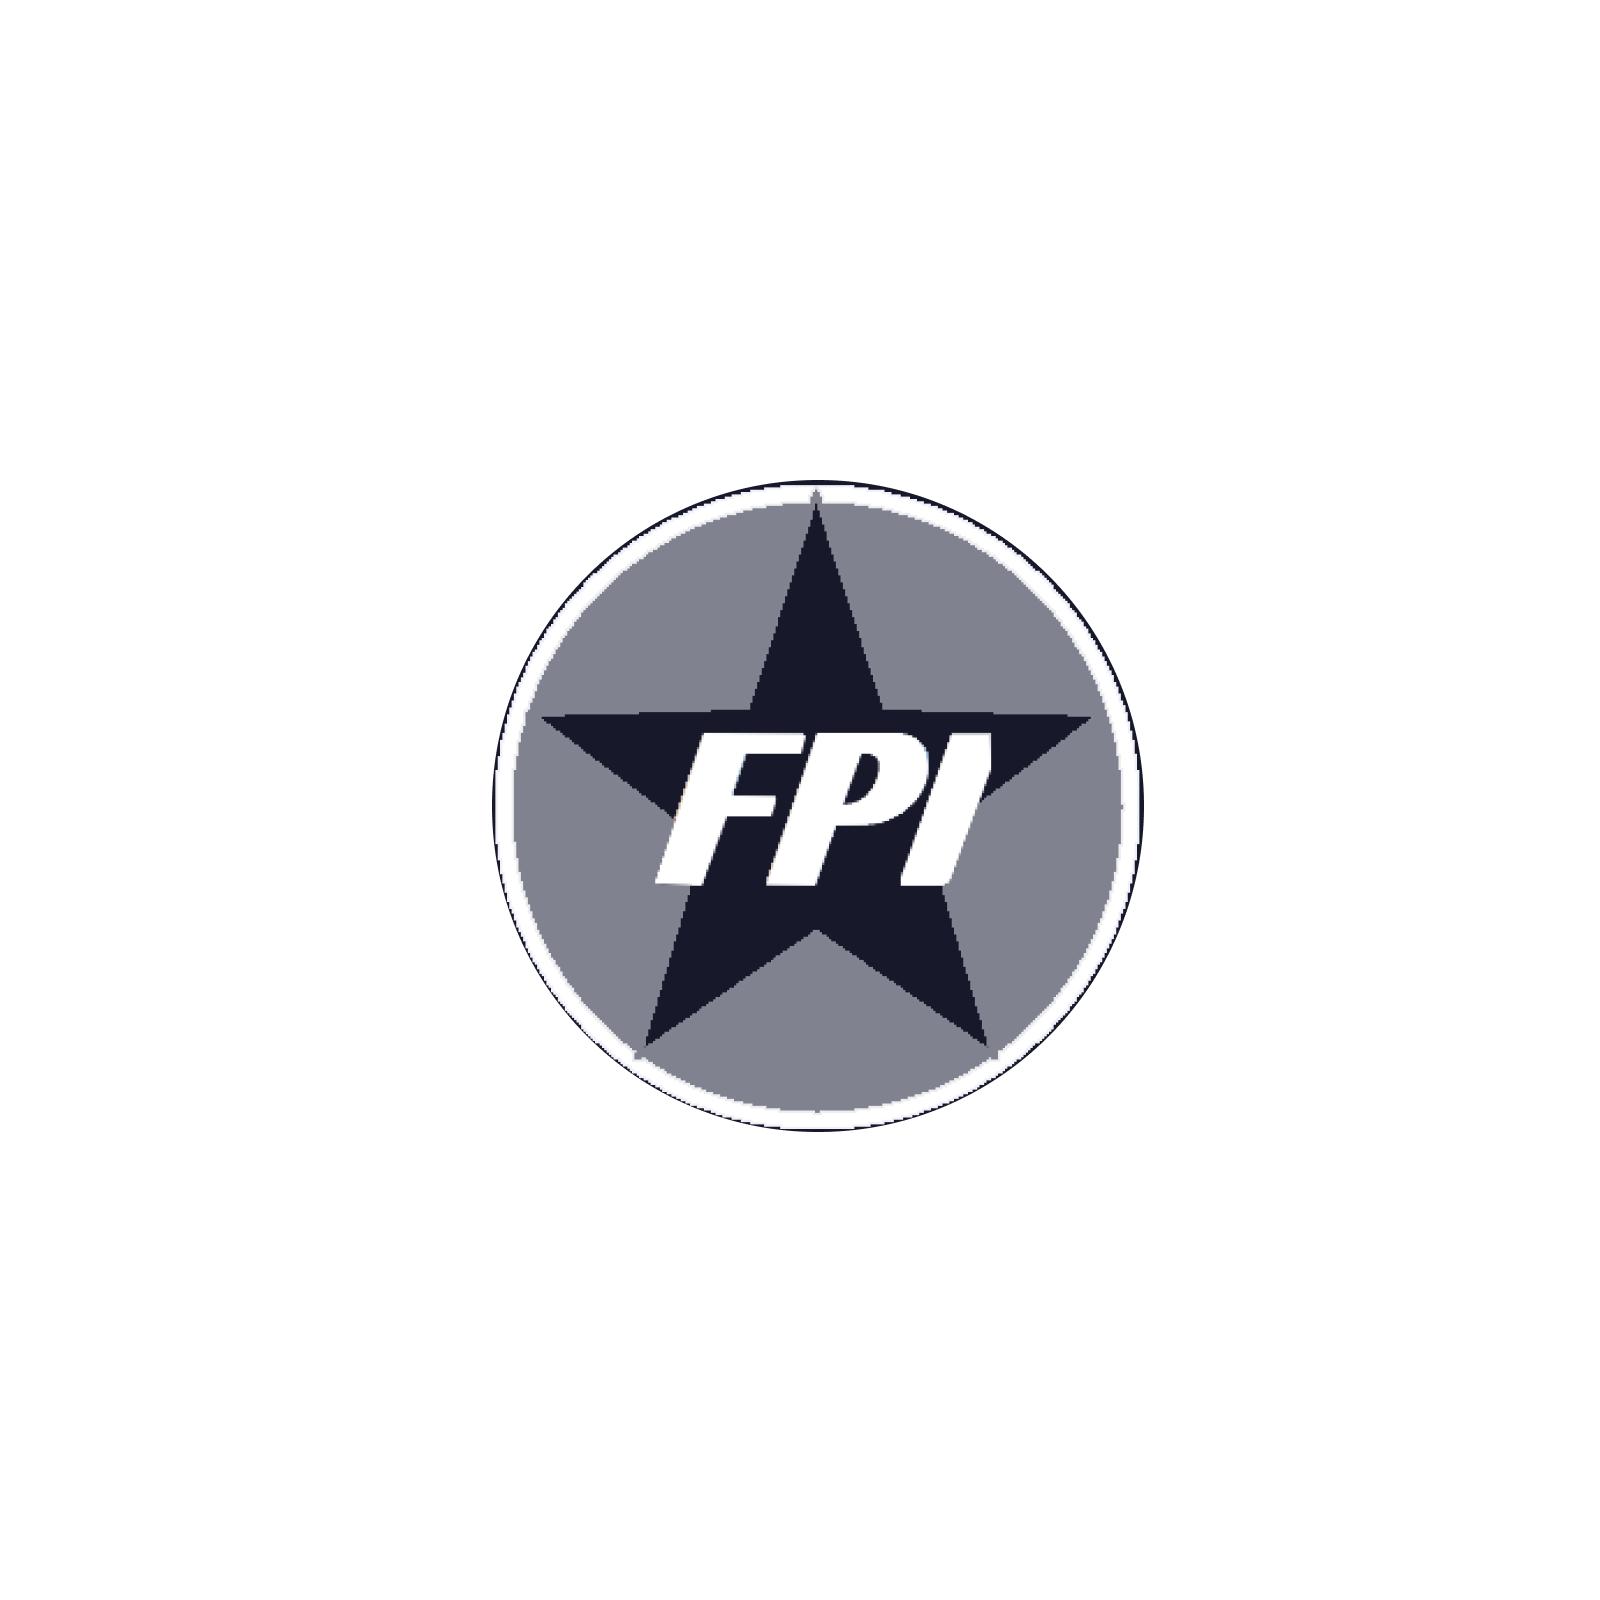 FPI logo on a transparent backdrop.